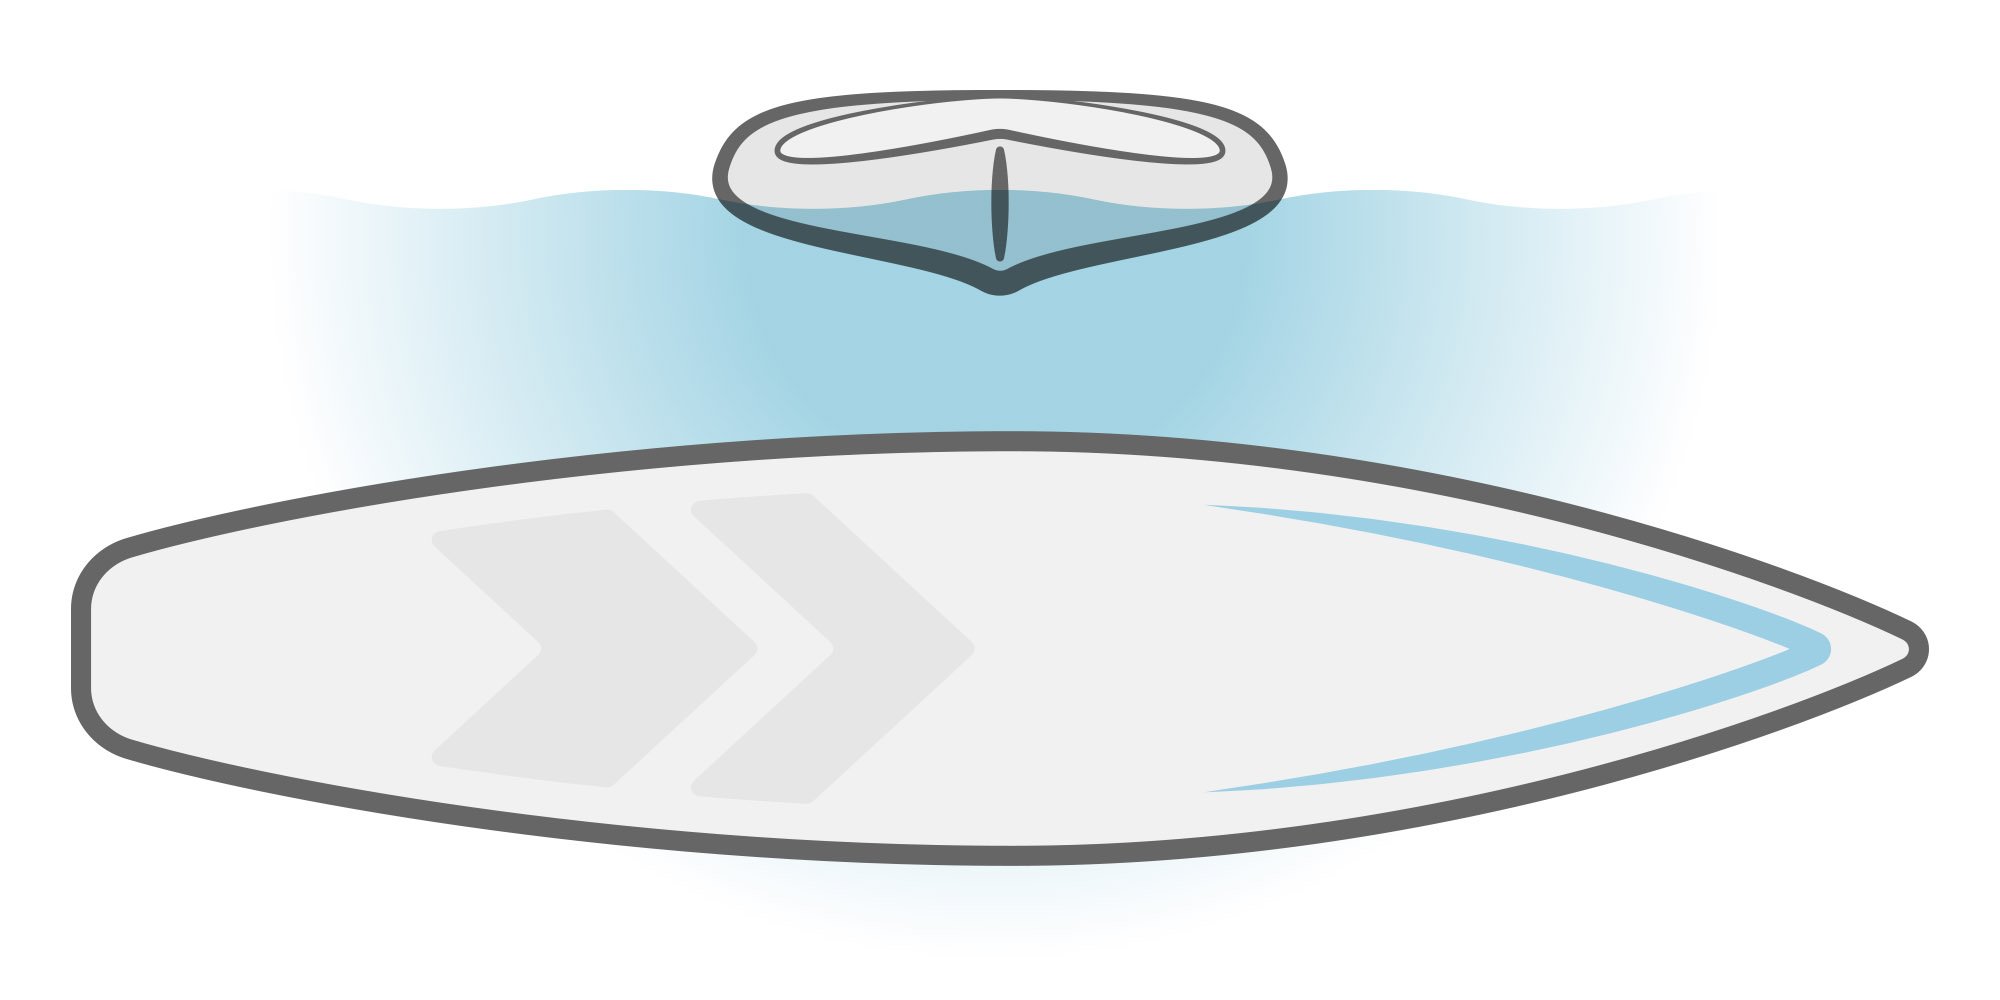 Ilustracija SUP paddleboarda s špicastim trupom.